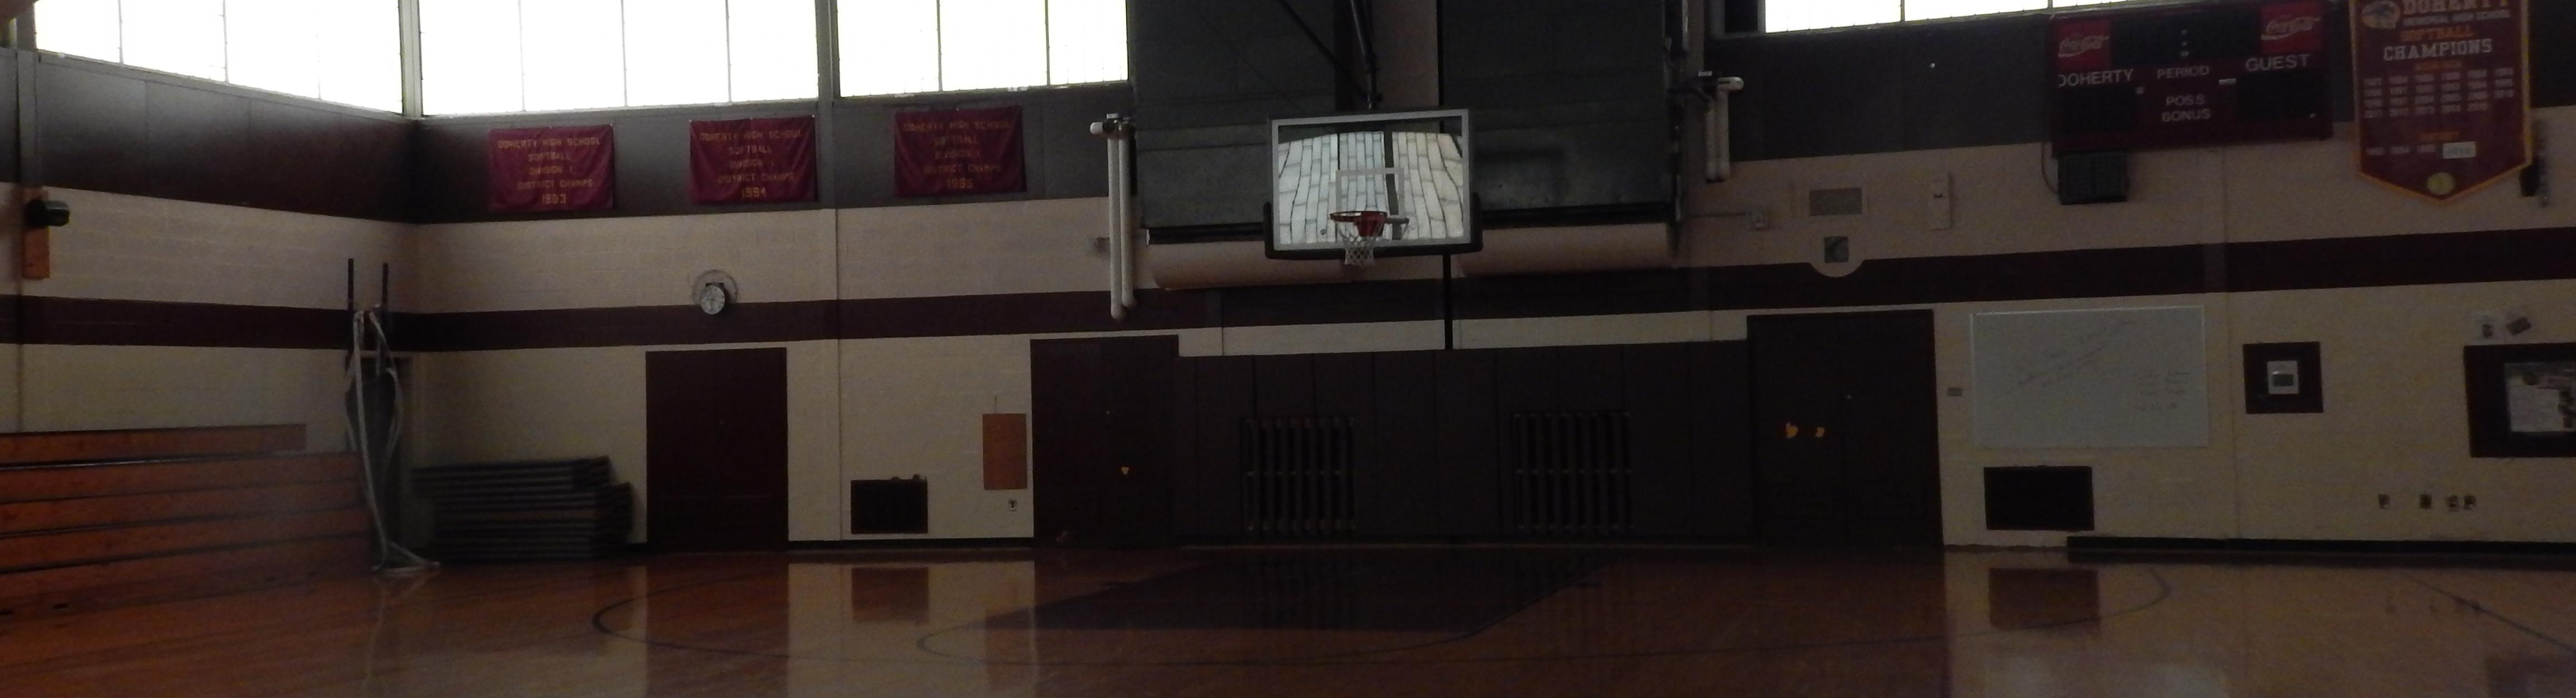 Empty School gym 